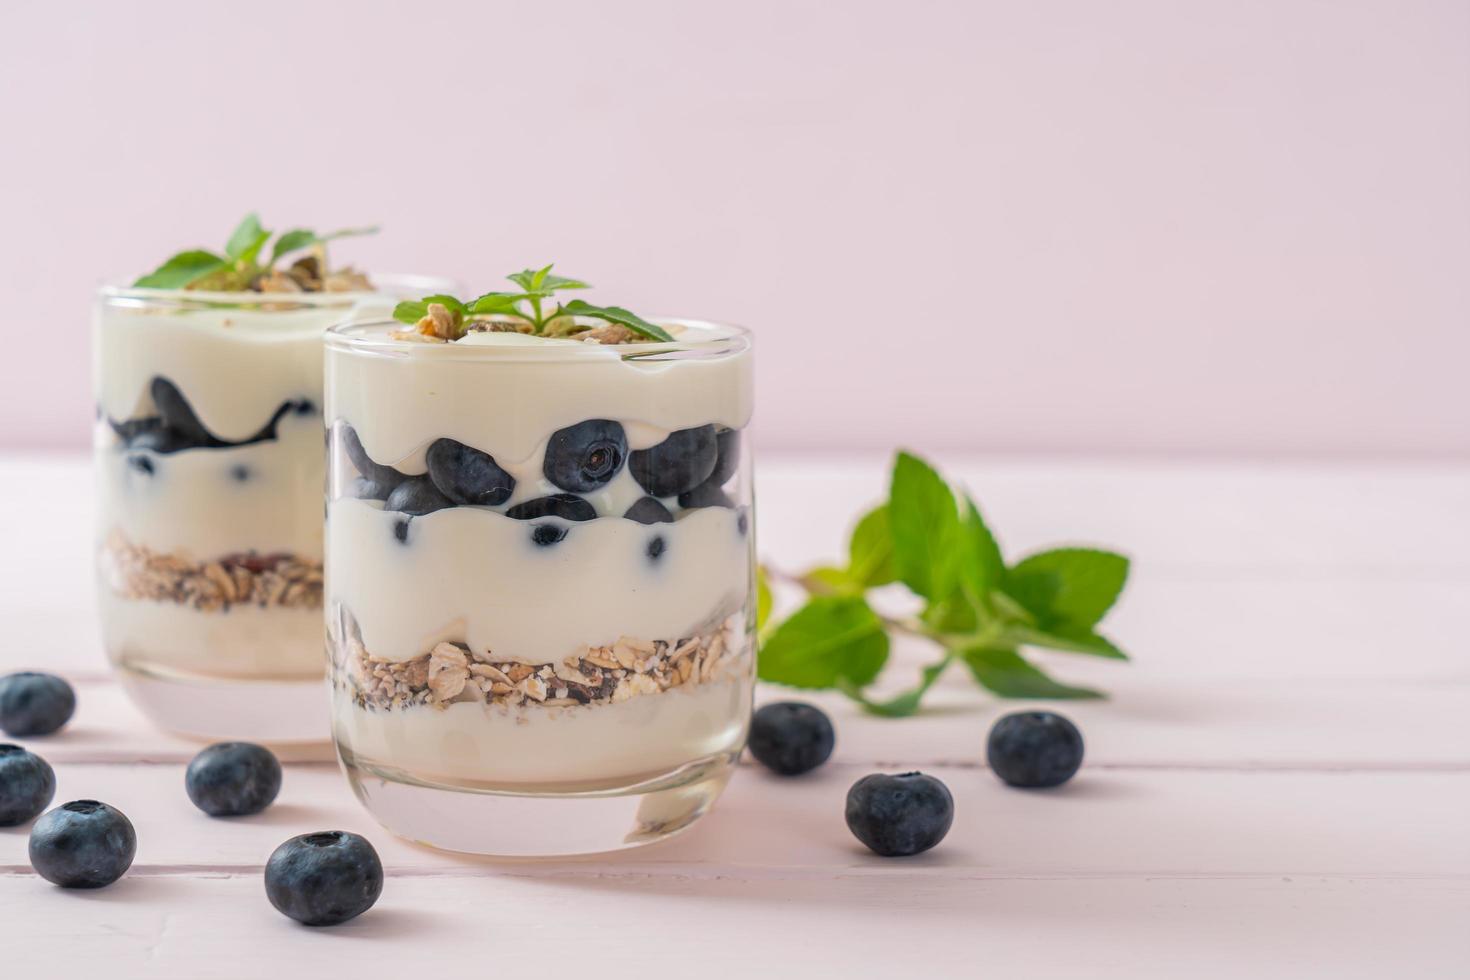 mirtilli freschi e yogurt con muesli - stile di cibo sano foto